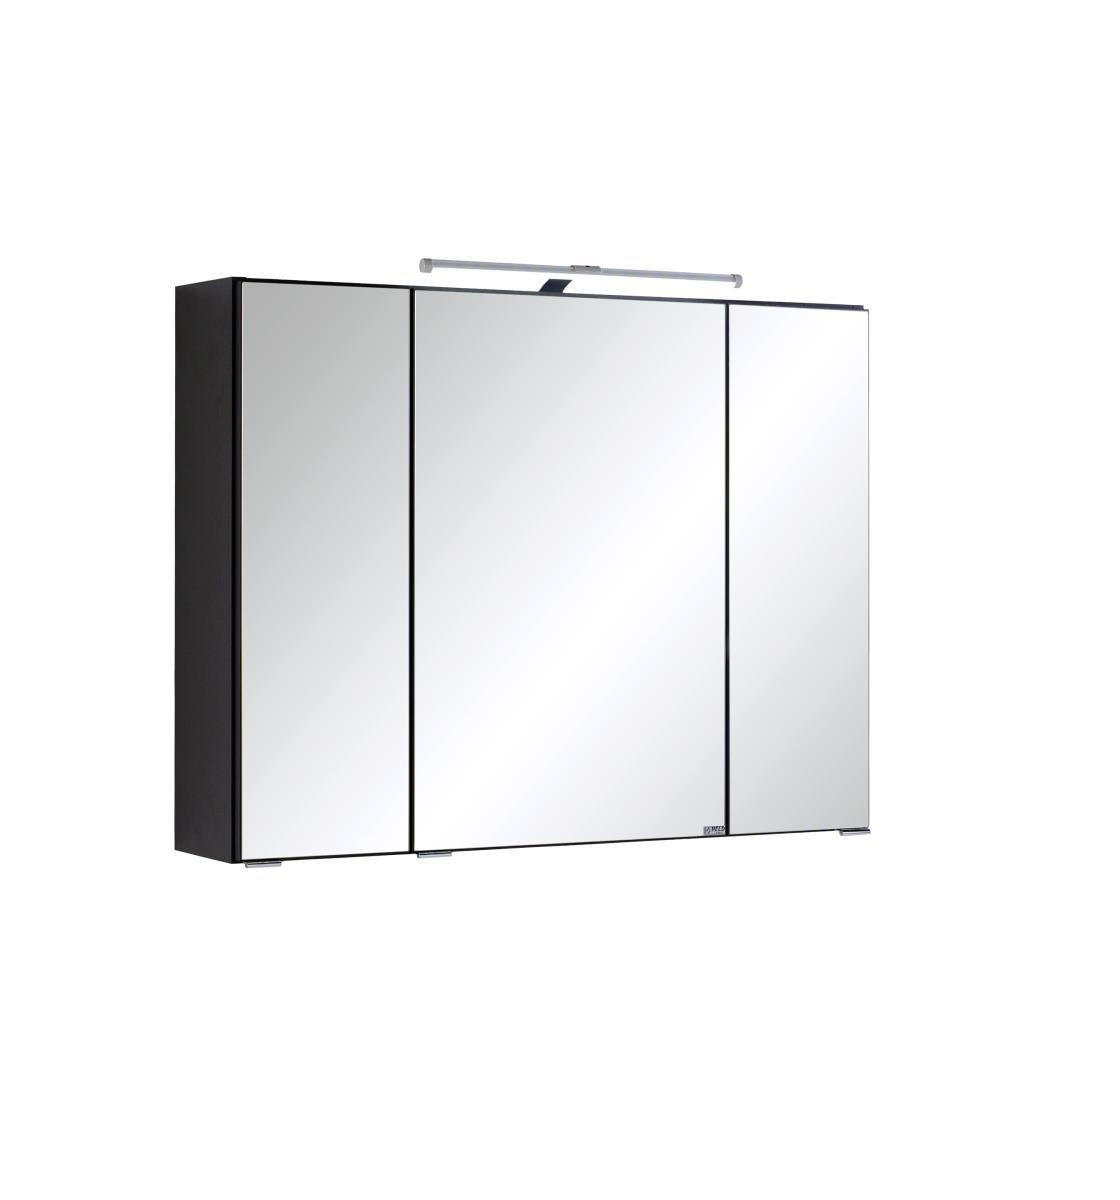 Badezimmerschrank mit Spiegelfront online kaufen